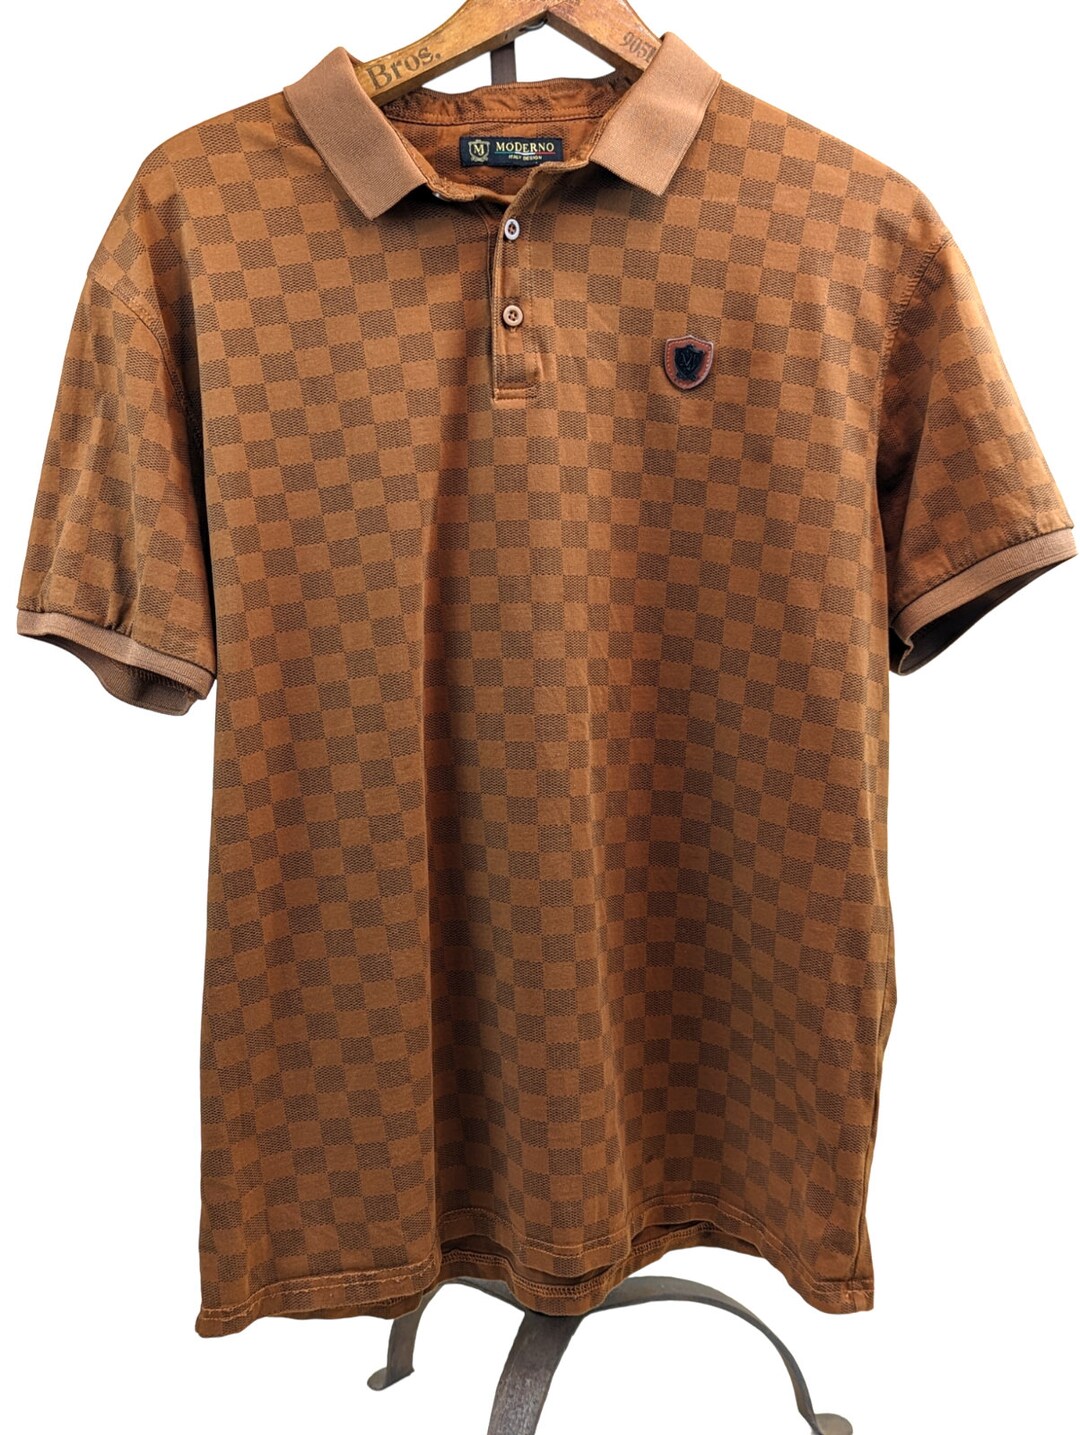 CoppertopVintageCo Men's Moderno Italy Design Golf Polo Shirt